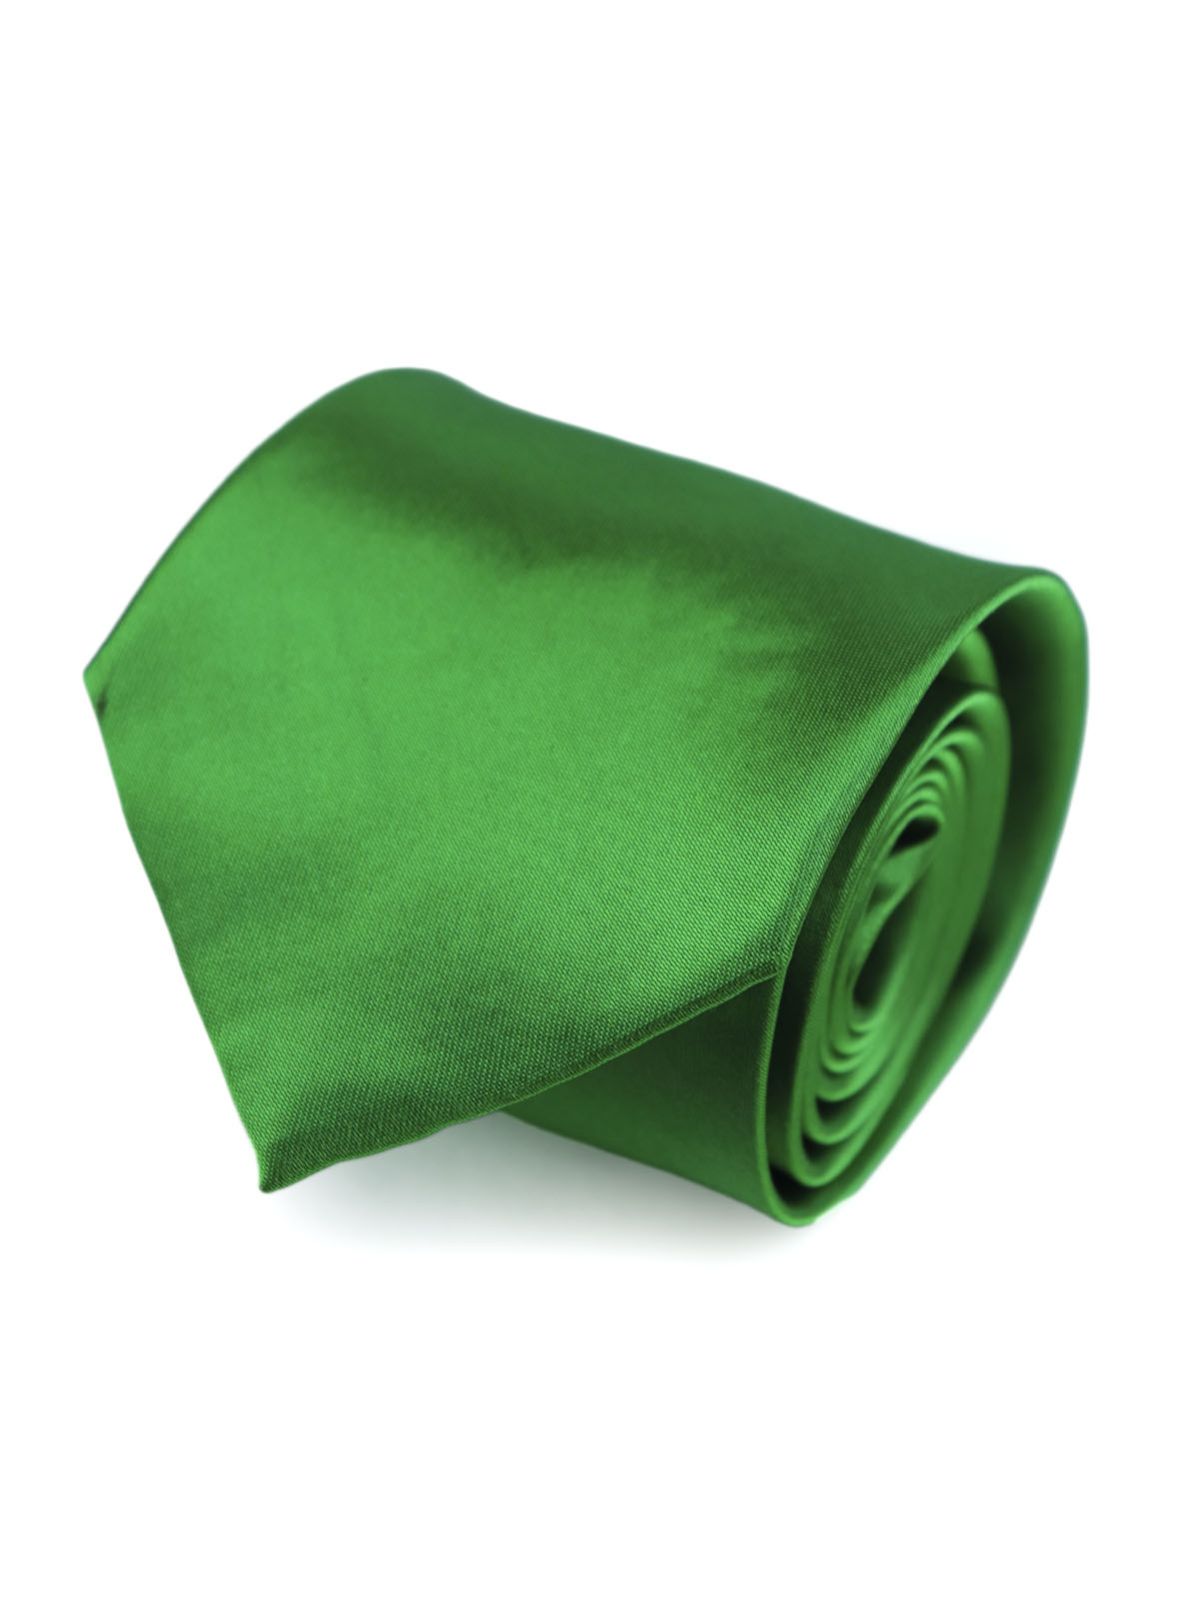 Галстук атласный широкий ярко-зеленый описание: Фасон - , Материал - Полиэстер, Цвет - Ярко-зеленый, Размер - 8,5 см х 150 см, Страна производства - Турция.